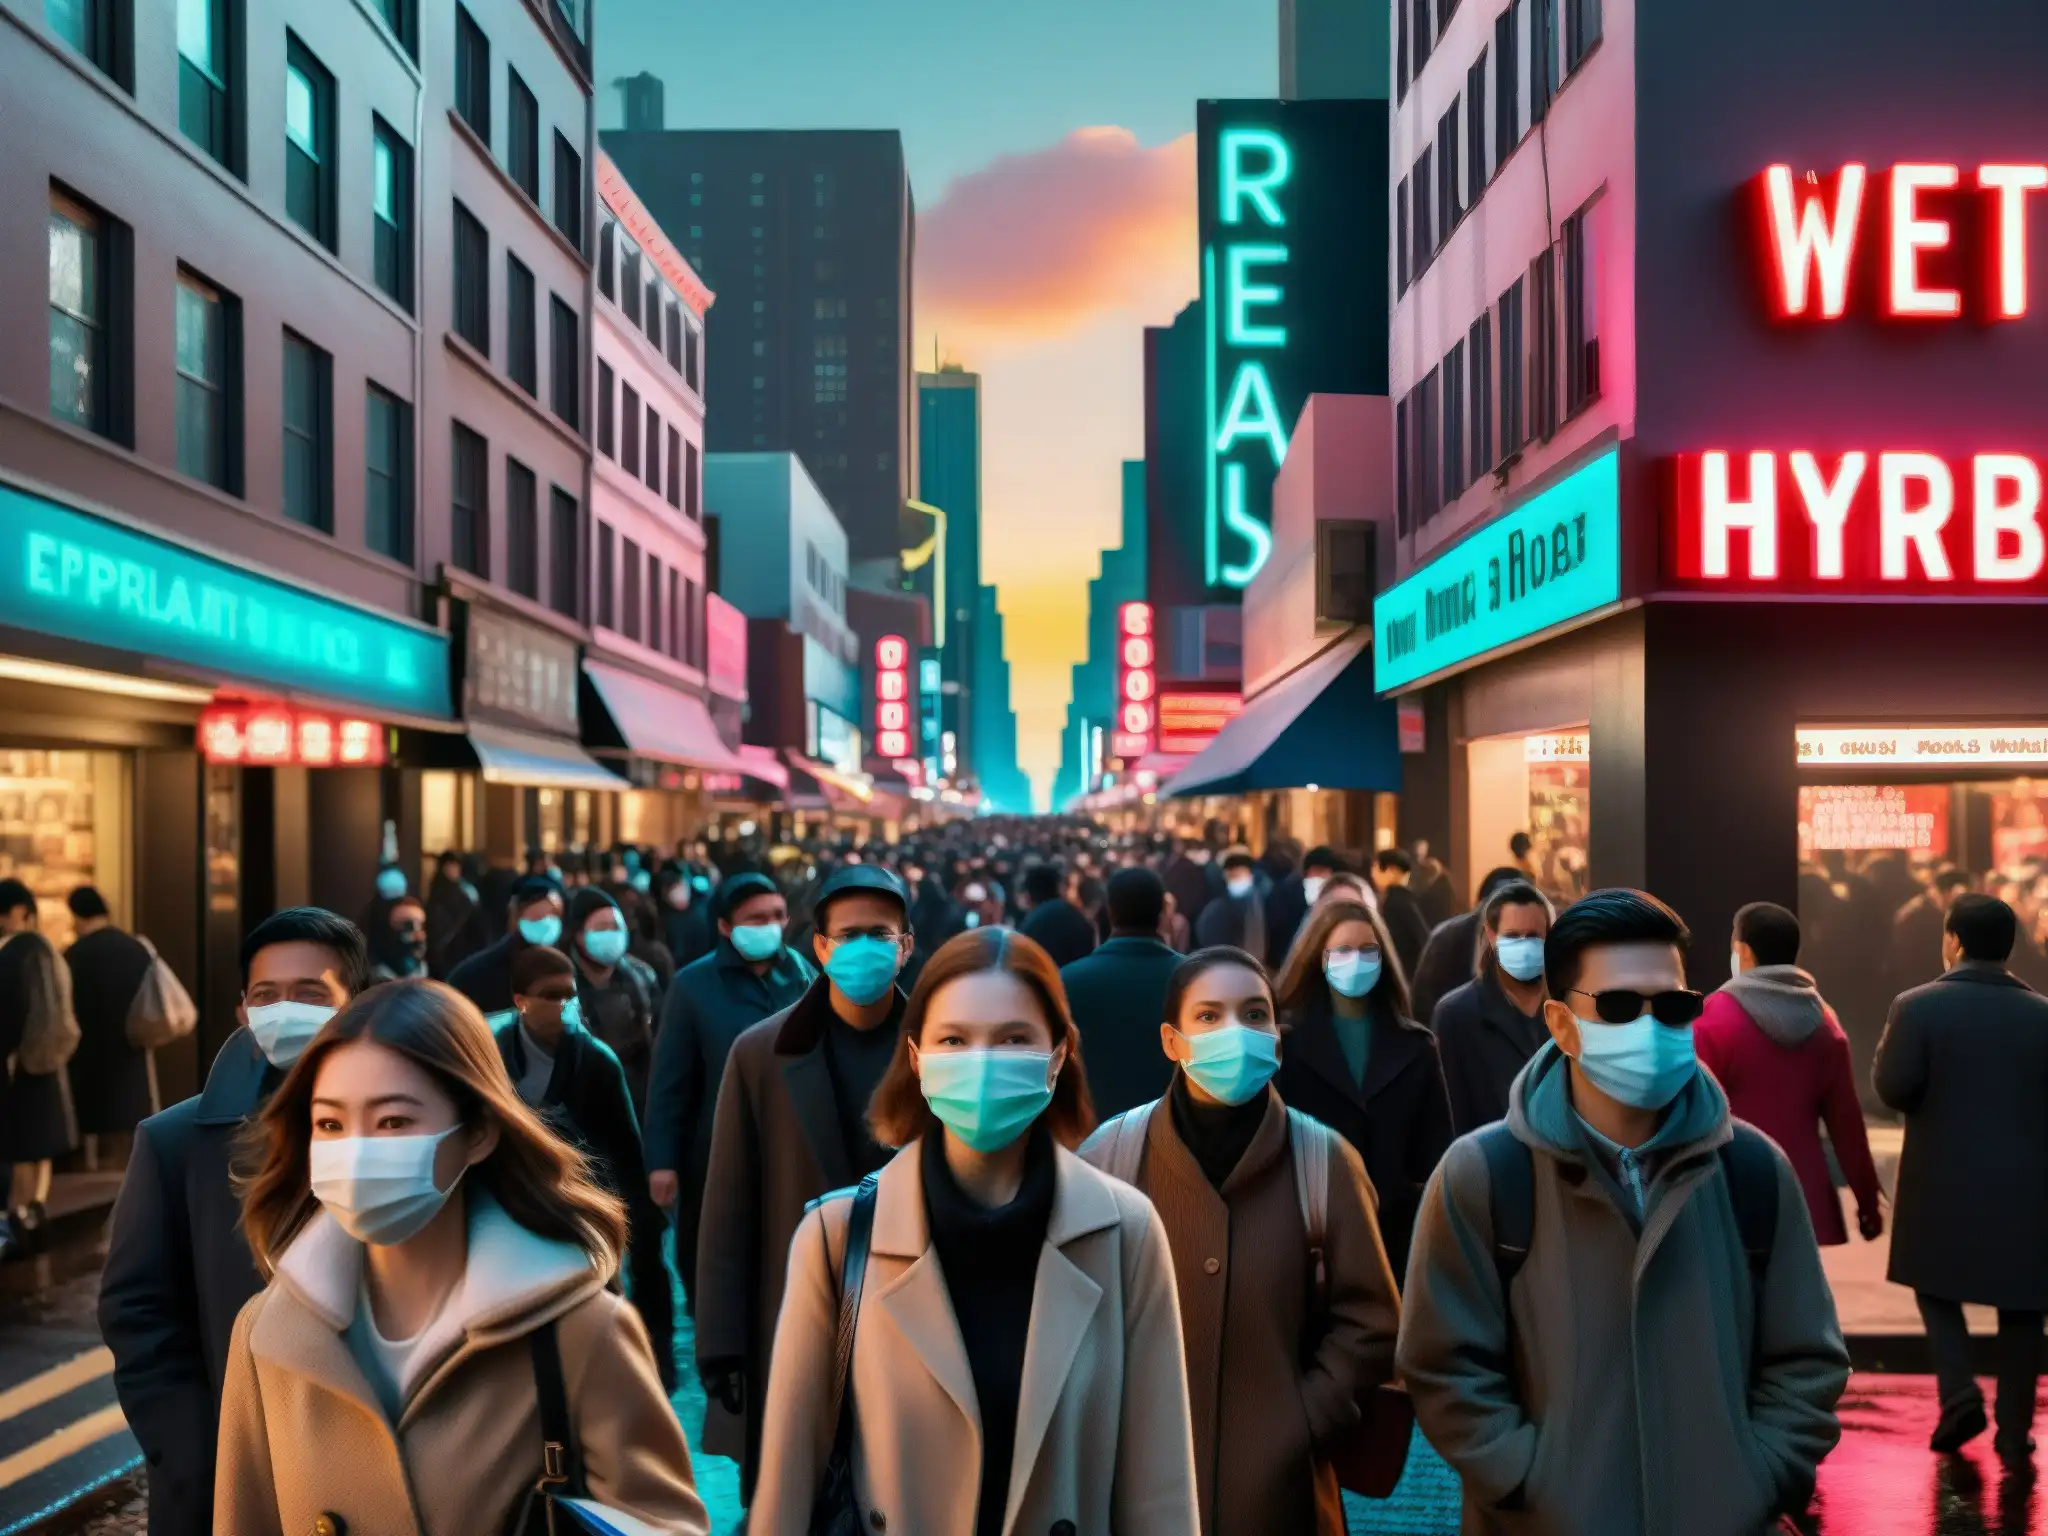 Una calle de ciudad abarrotada con personas usando mascarillas, mirando con ojos desconfiados y aferrando sus pertenencias